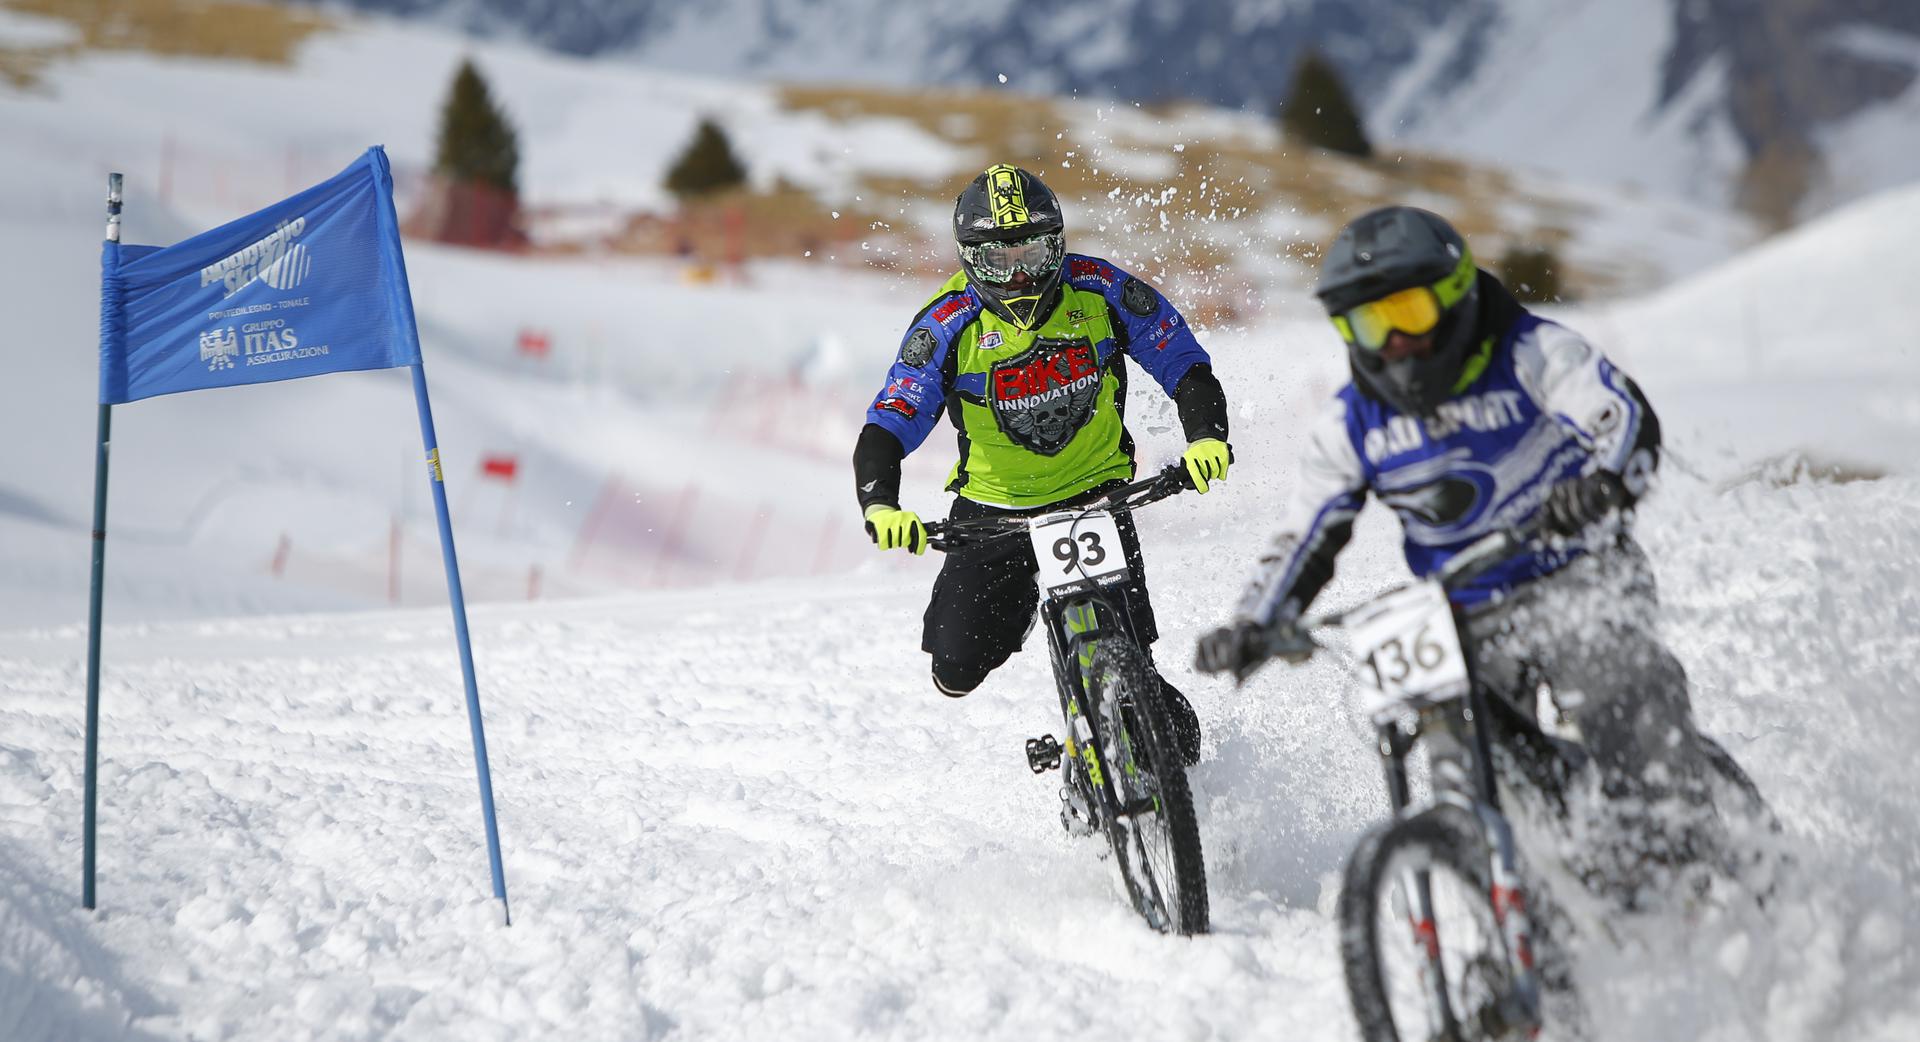 Sfida ad alta velocità a La Winter DH 2020 con le porte da slalom gigante a delimitare il percorso (Credits: Photo Team)